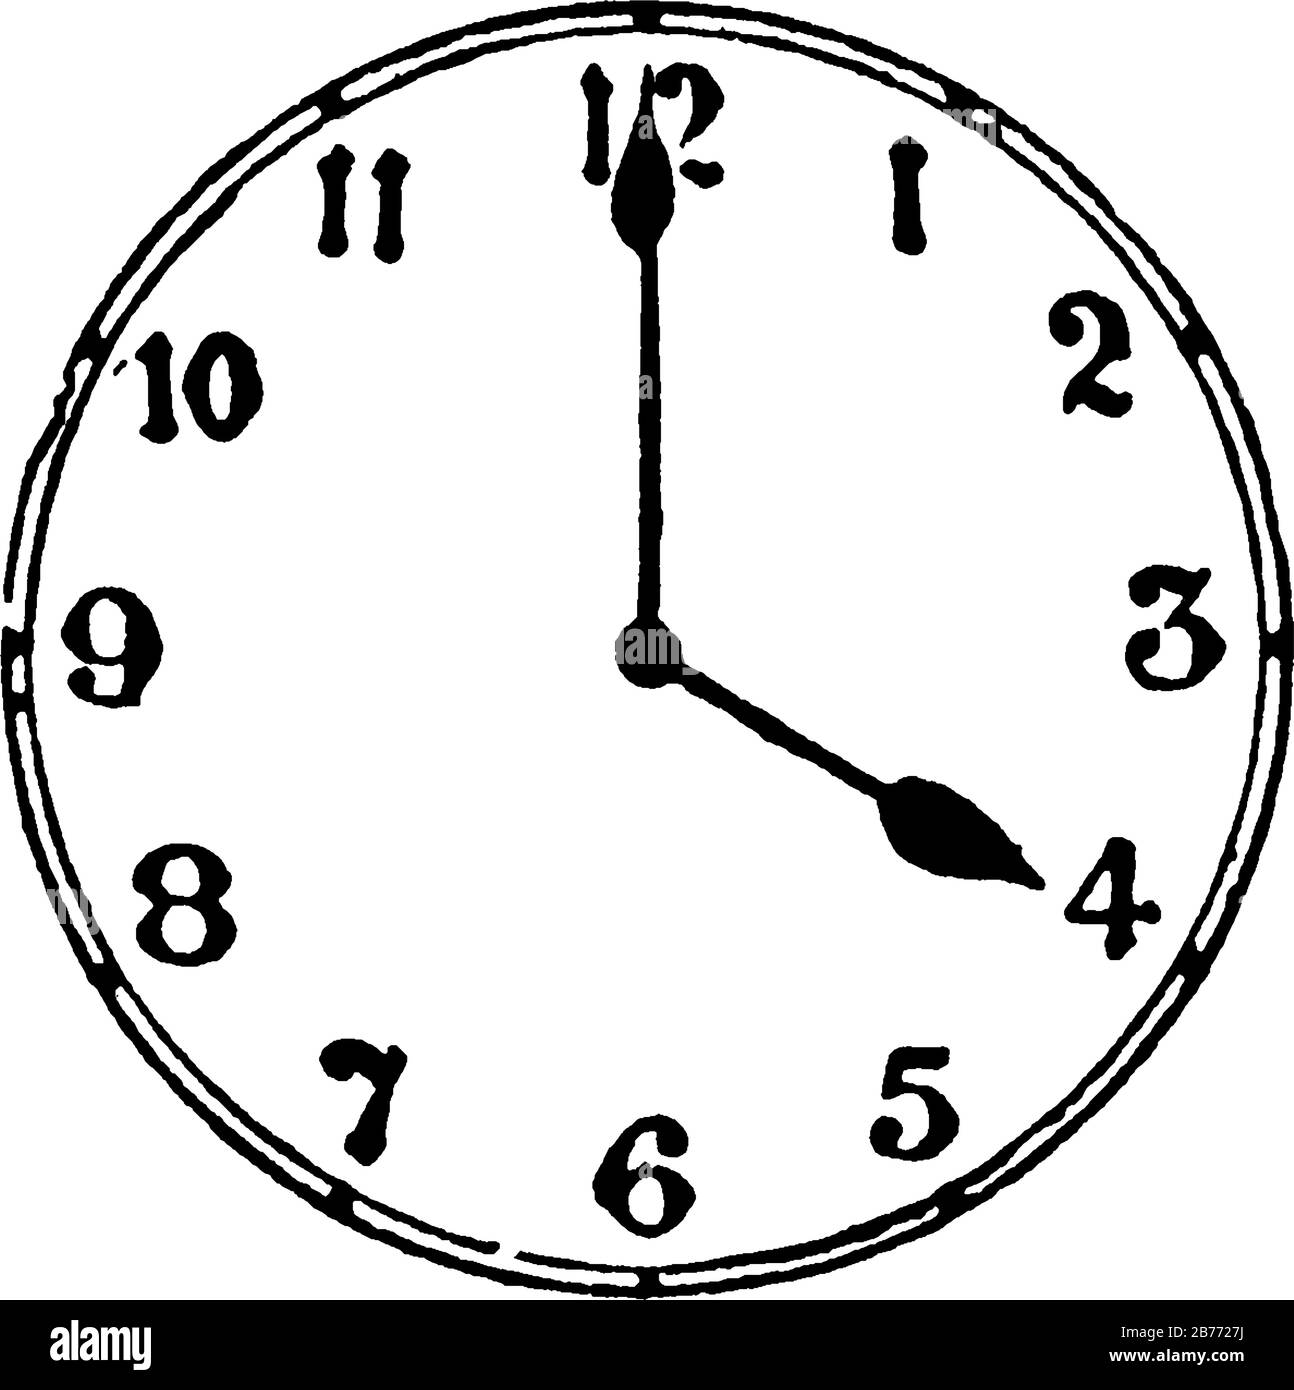 Das Bild zeigt die Uhr, die angibt, dass es 4 Uhr ist, und zeigt drei  verschiedene Uhrengrößen darin, Vintage-Linien-Zeichnung oder Gravur  Stock-Vektorgrafik - Alamy